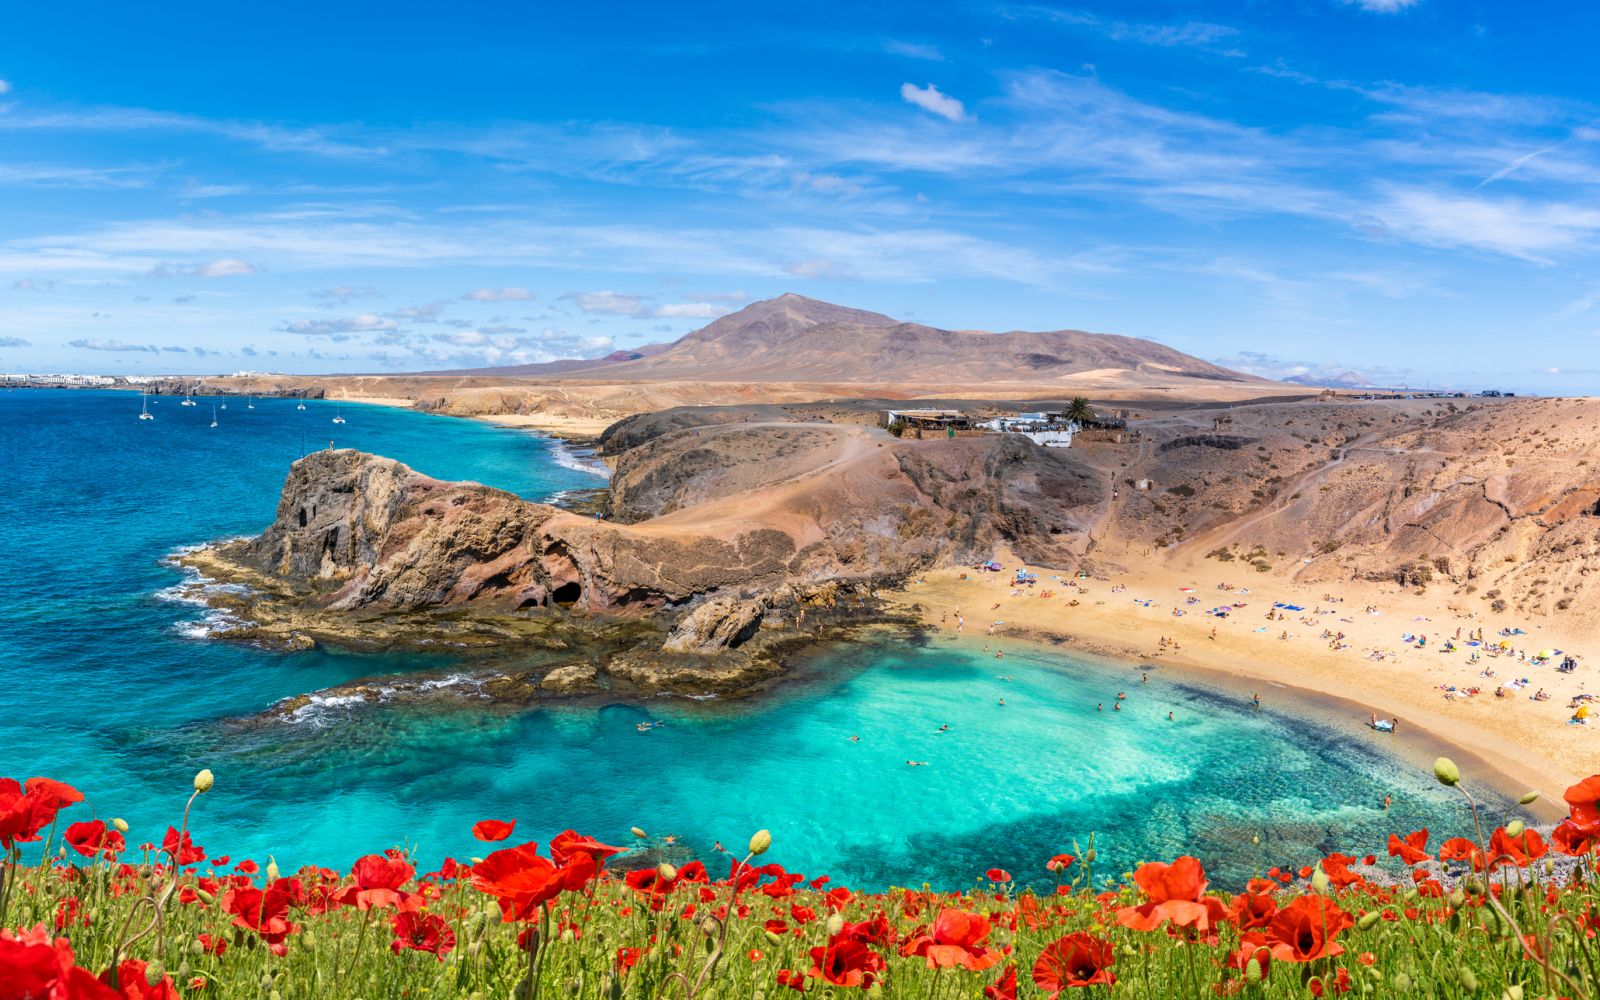 Canarie: Lanzarote & Fuerteventura